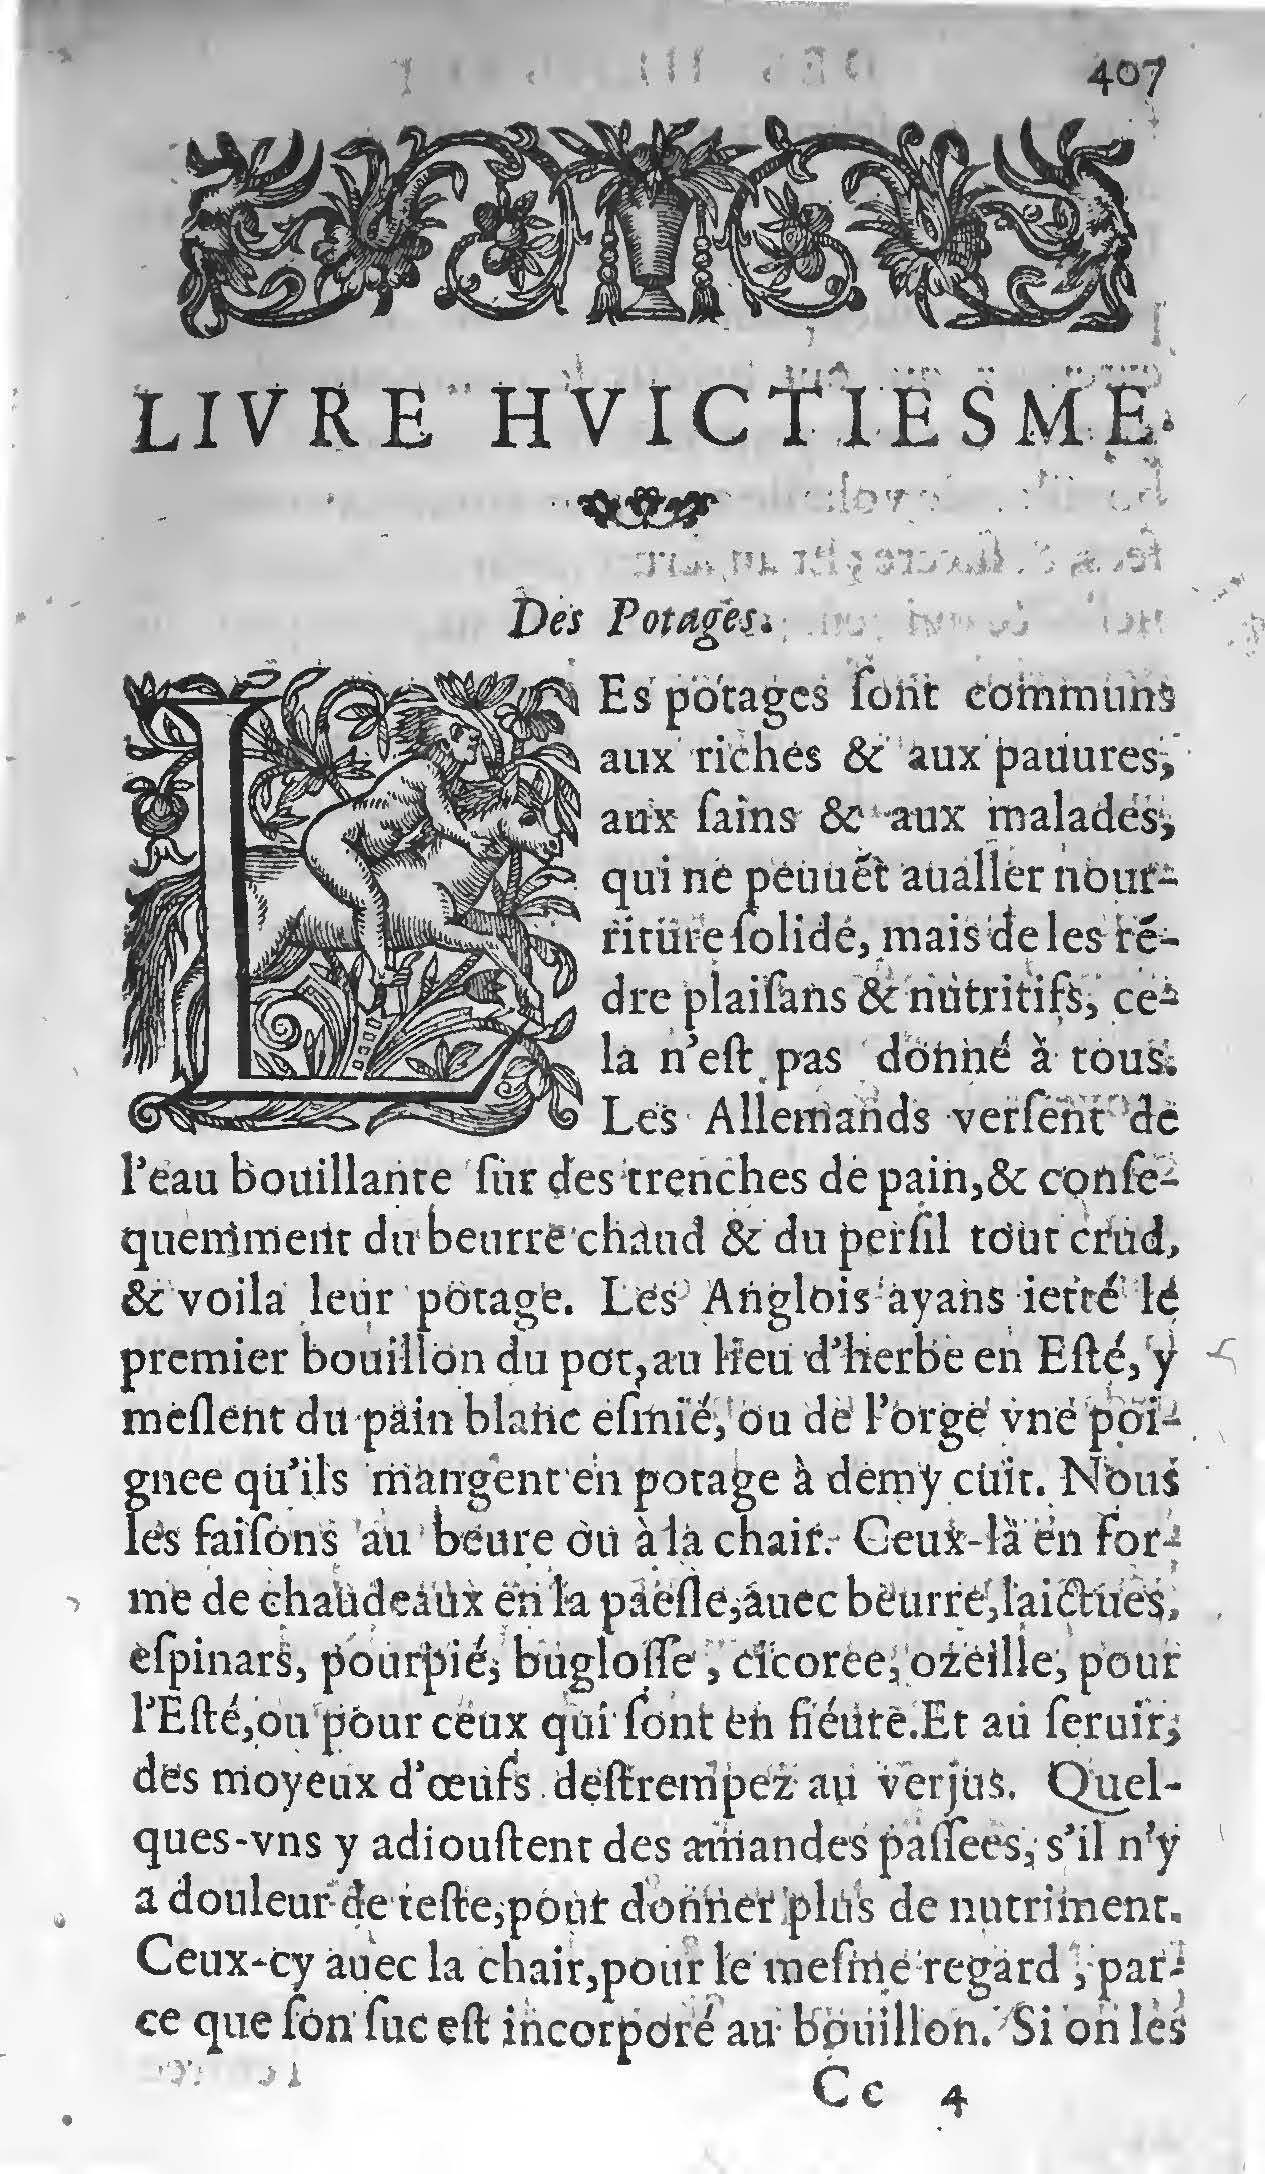 1607 Étienne Servain et Jean Antoine Huguetan - Trésor de santé ou ménage de la vie humaine - BIU Santé_Page_427.jpg